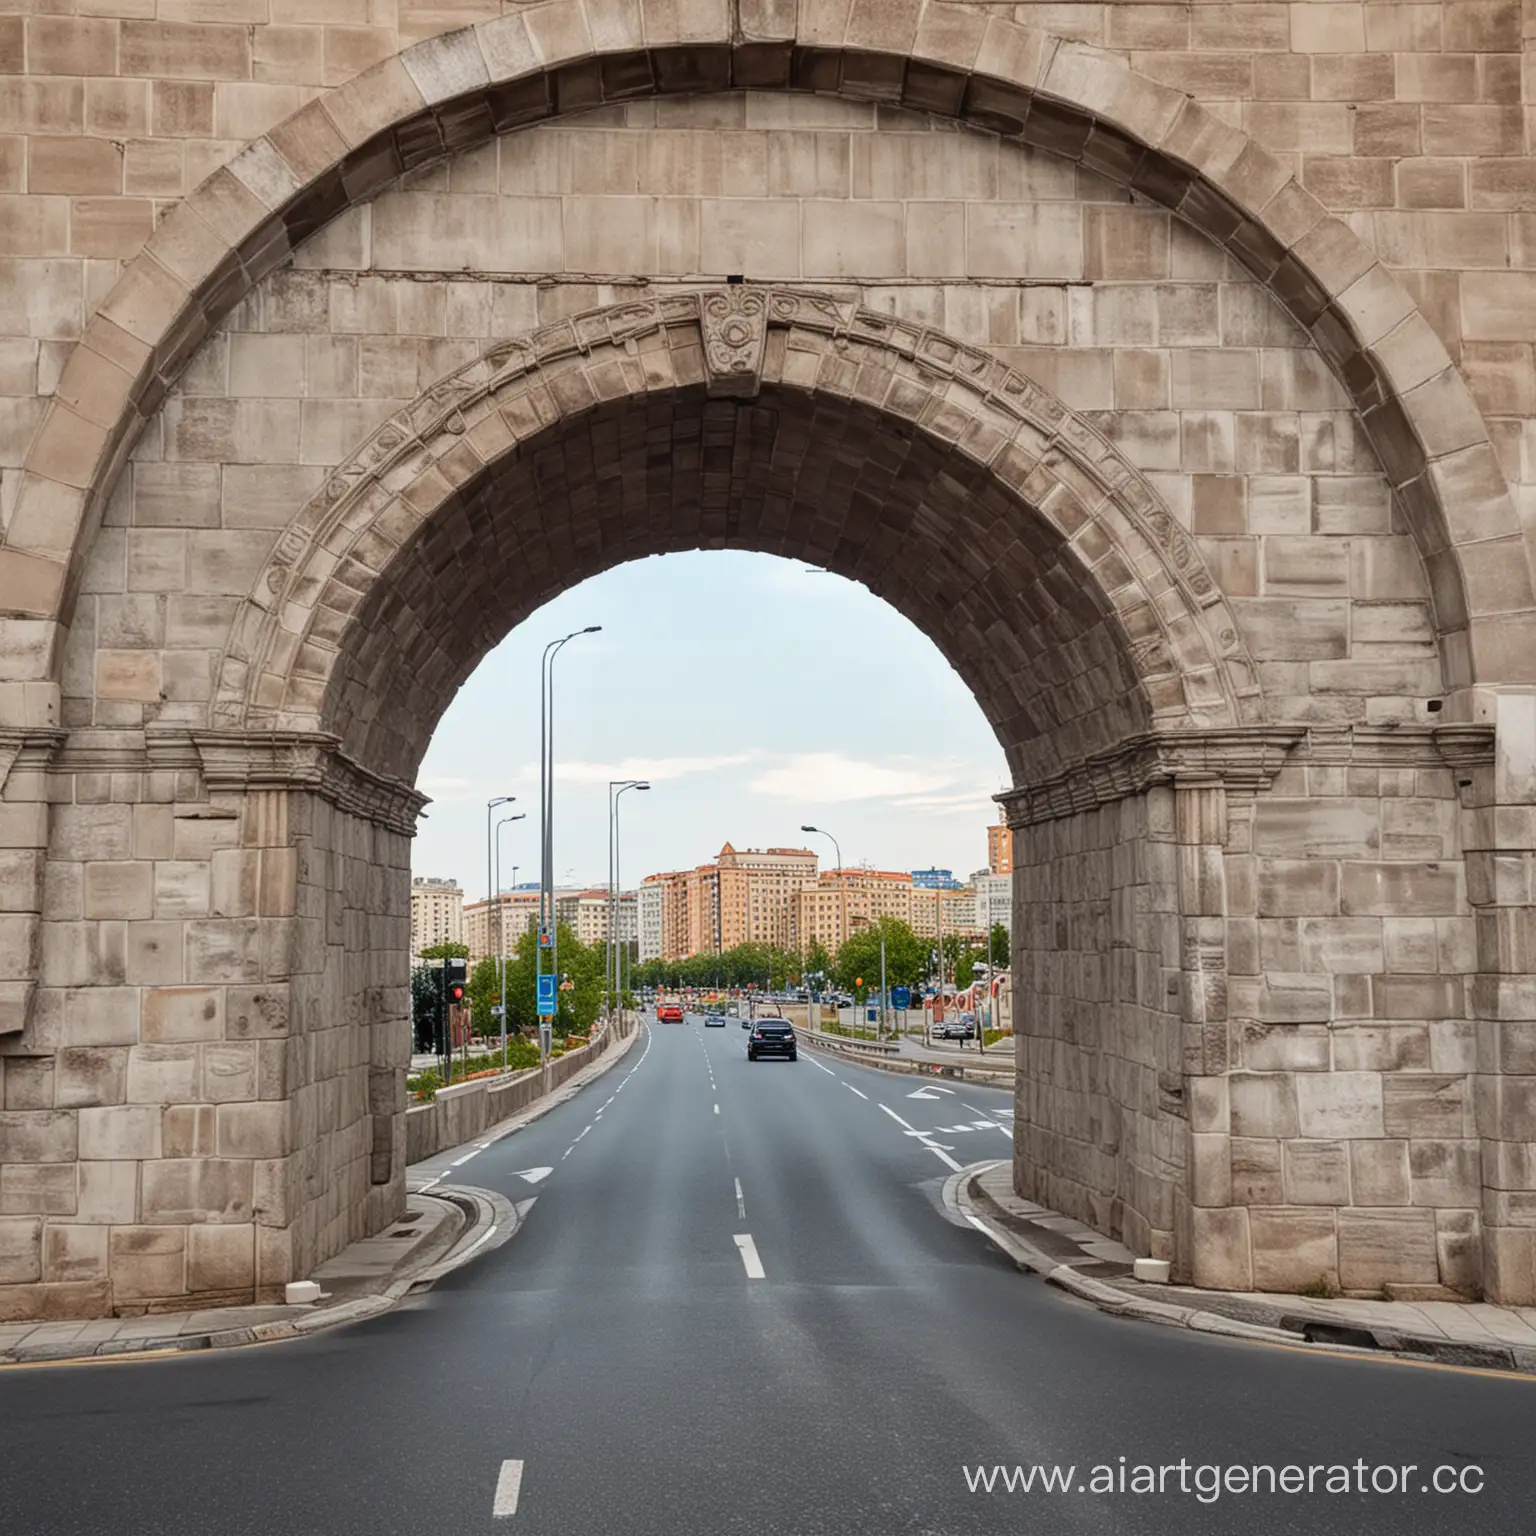 Круглая арка при въезде в город. Арка стоит на дороге